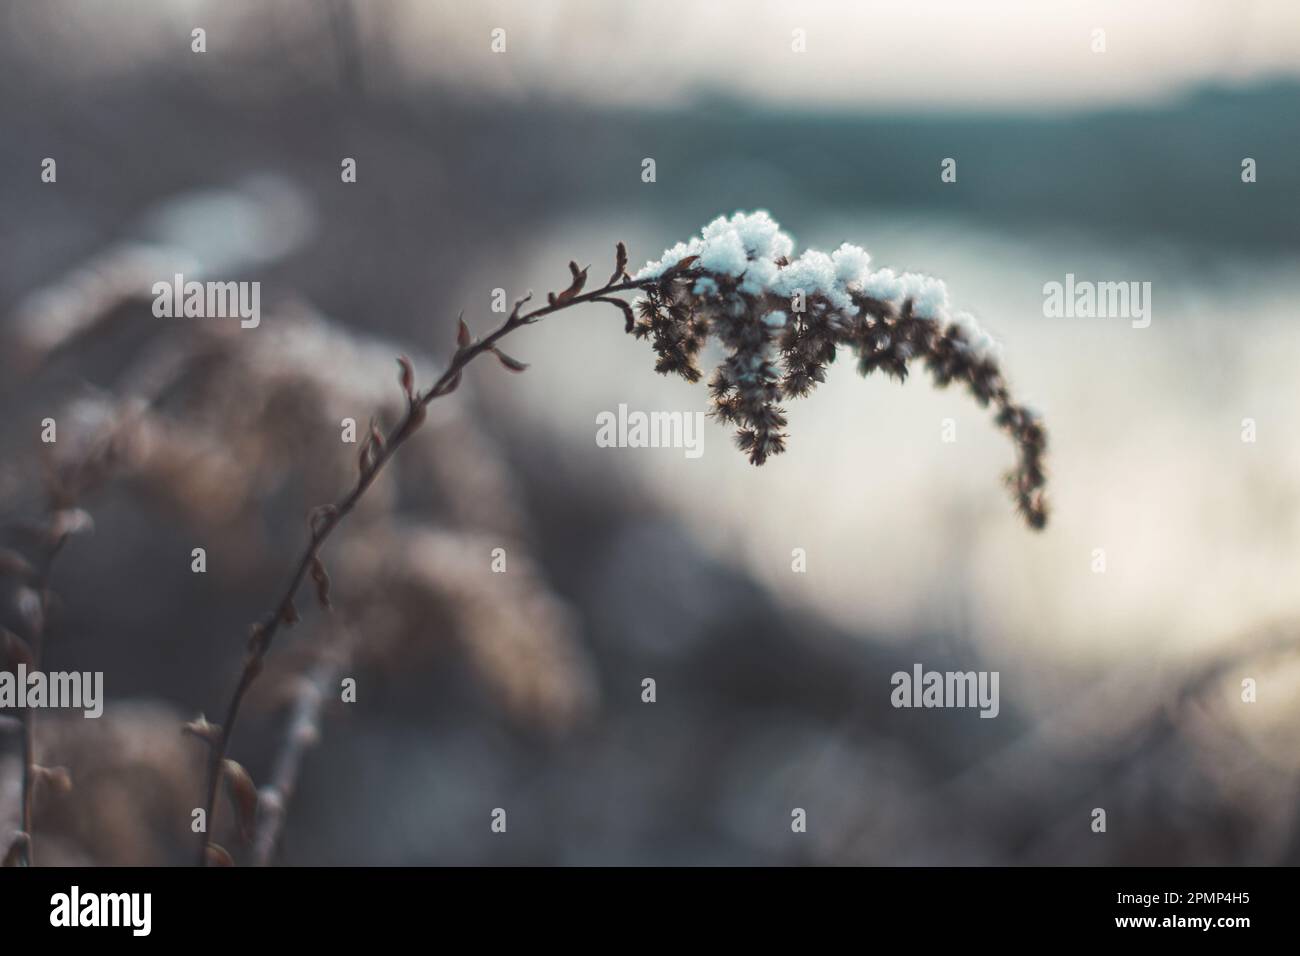 Nahaufnahme einer verwelkten, schneebedeckten Pflanze, die den Kontrast von Leben und Kälte in einer Winterszene zeigt Stockfoto